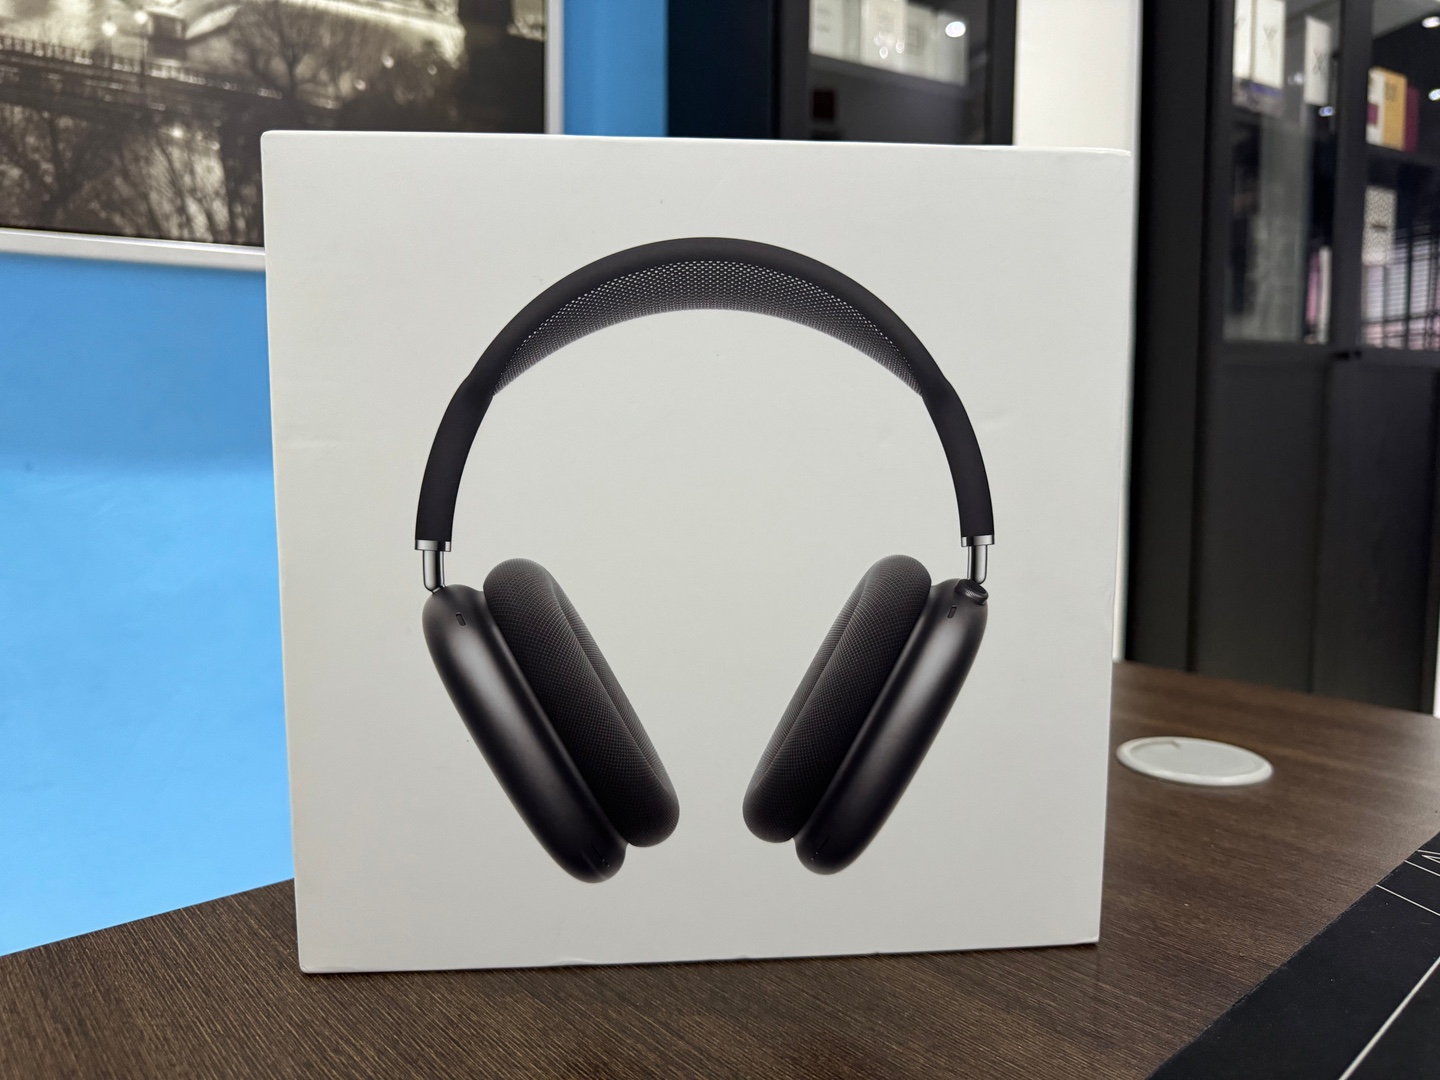 camaras y audio - AirPods Max Space Gray Nuevos Sellados by Apple , 100% Originales, $ 28,999 NEG 0